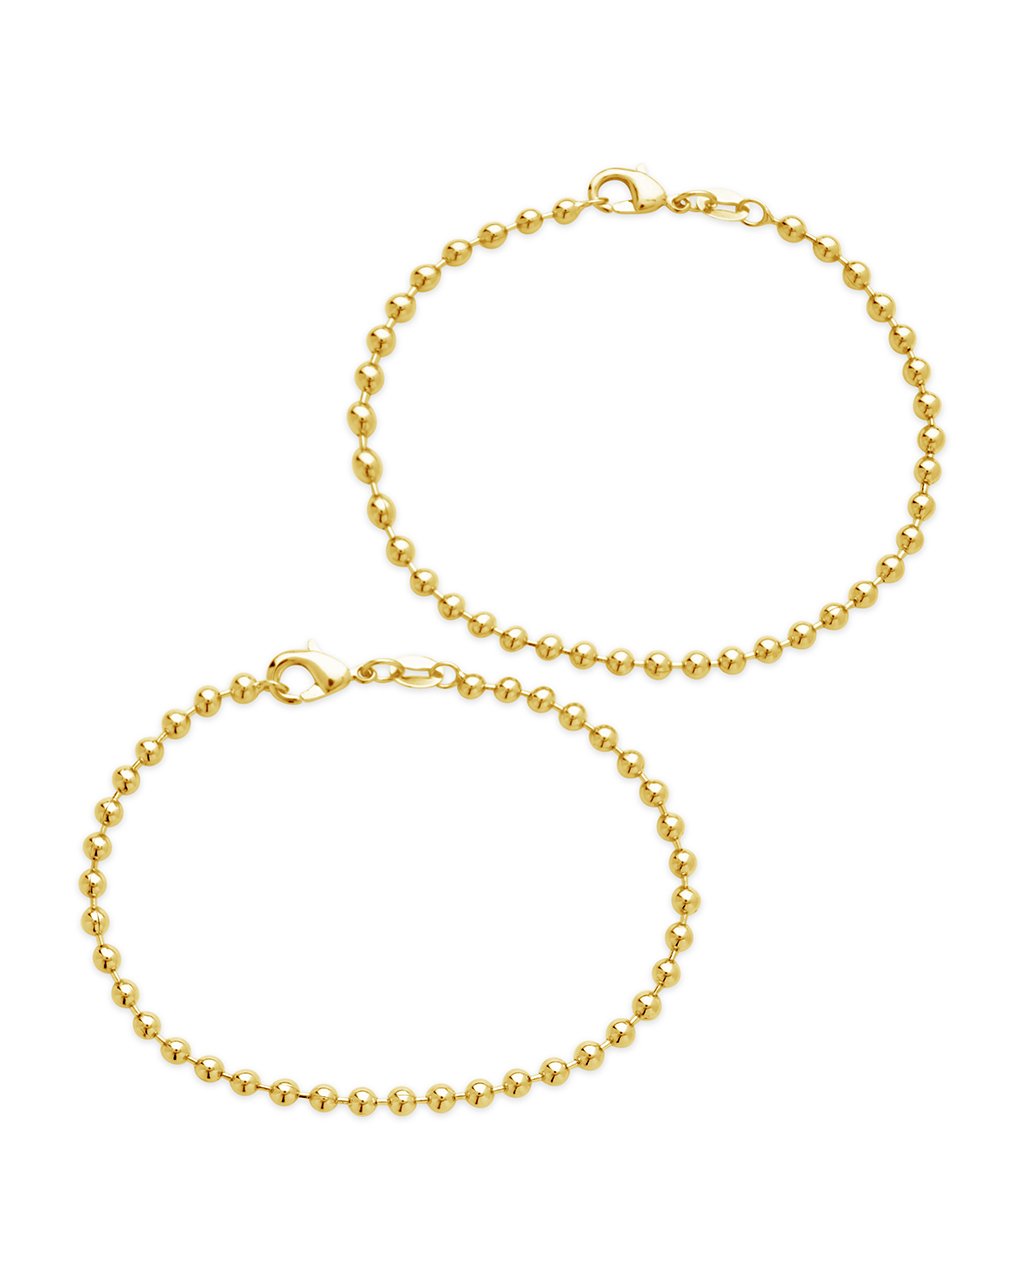 Dainty Beaded Bracelet Set of 2 Bracelet Sterling Forever Gold 